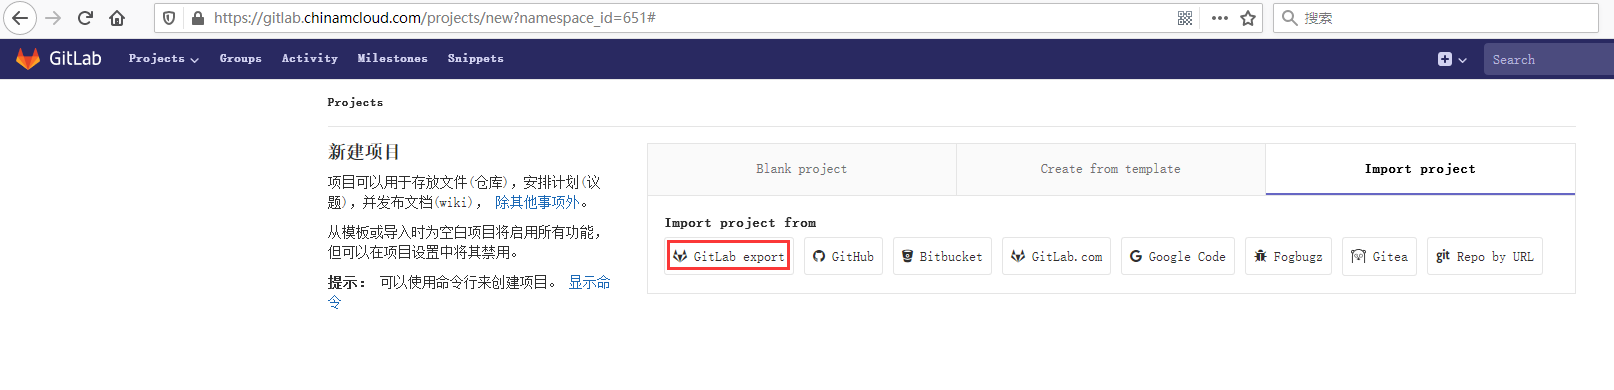 打开组 pcs 的网址：https://gitlab.chinamcloud.com/pcs ，新建项目 -> Import project ->  GitLab export